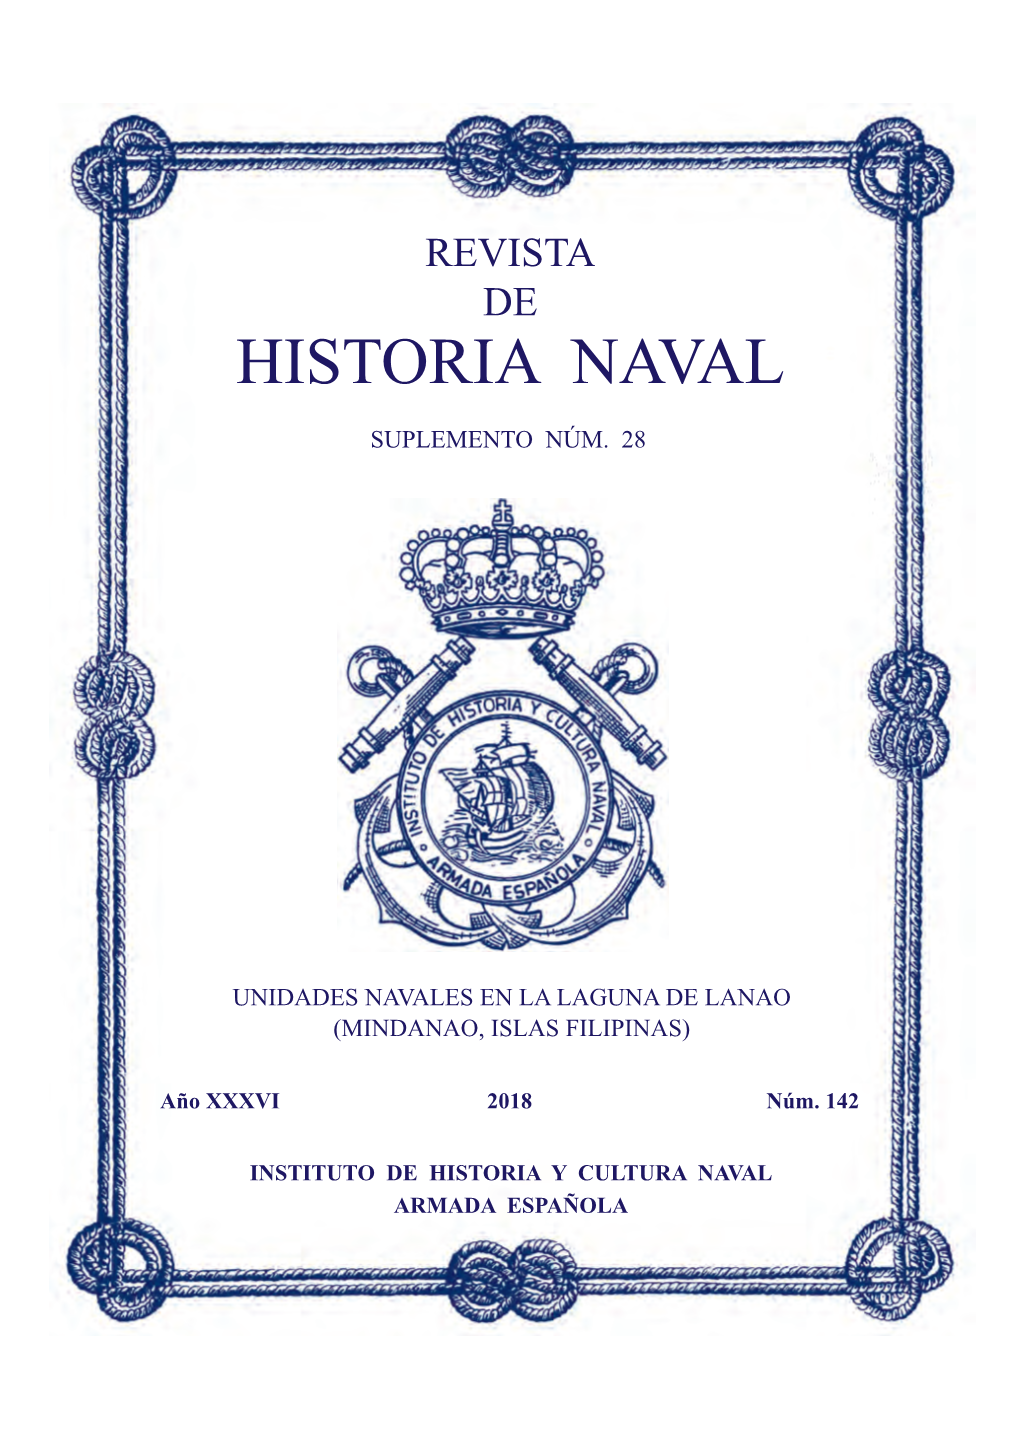 Revista De Historia Naval N.º 142 Suplemento N.º